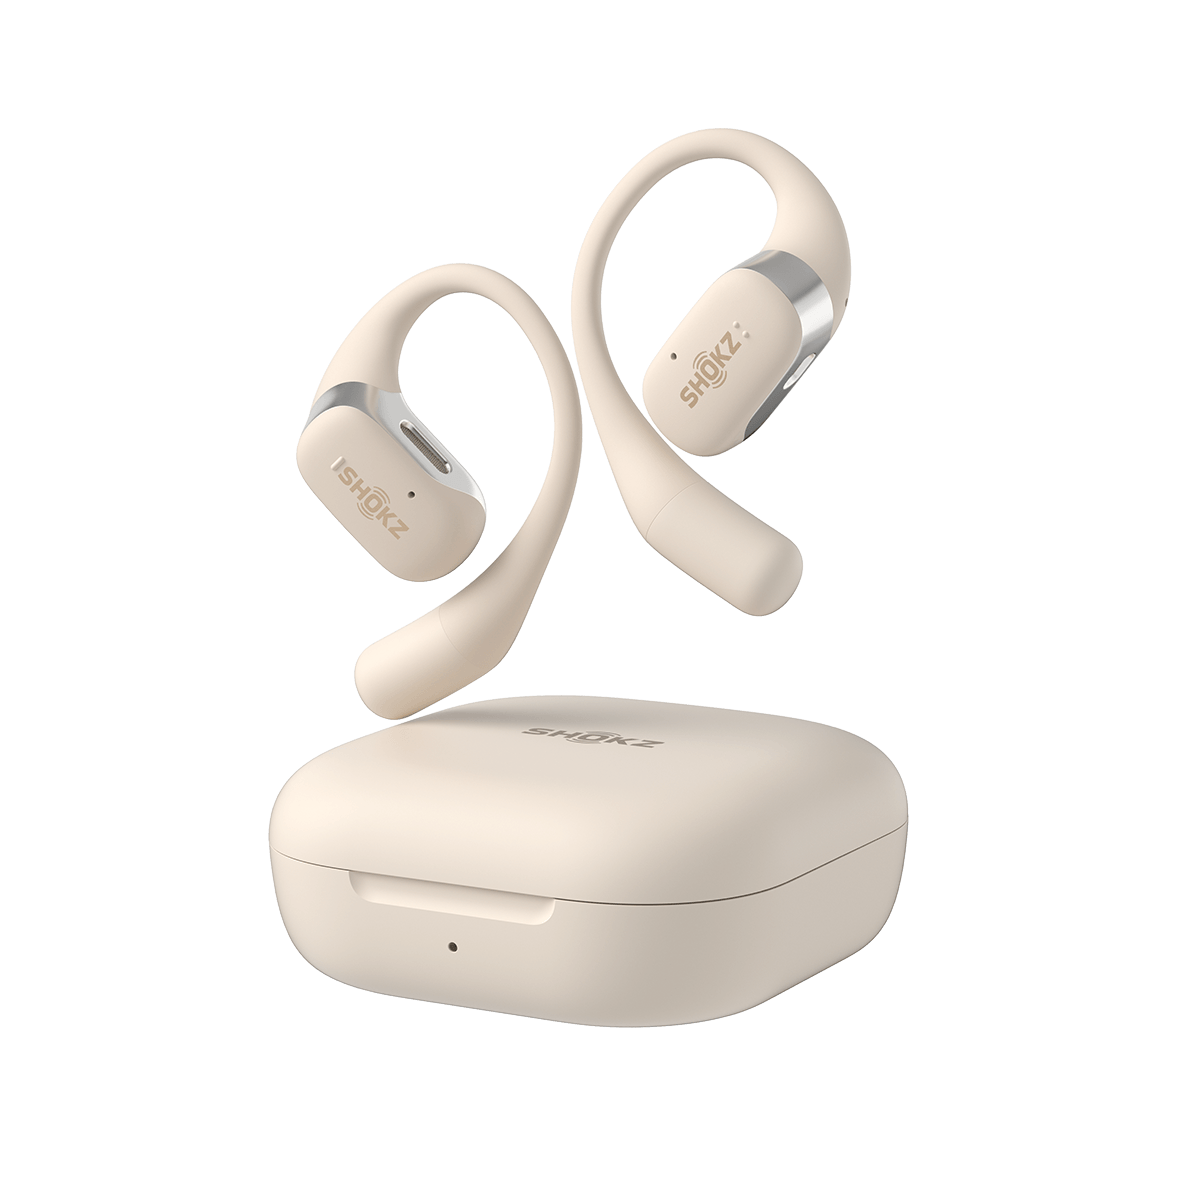 SHOKZ OpenFit - Auriculares Bluetooth inalámbricos con micrófono,  auriculares con ganchos para los oídos, resistentes al sudor, carga rápida,  tiempo